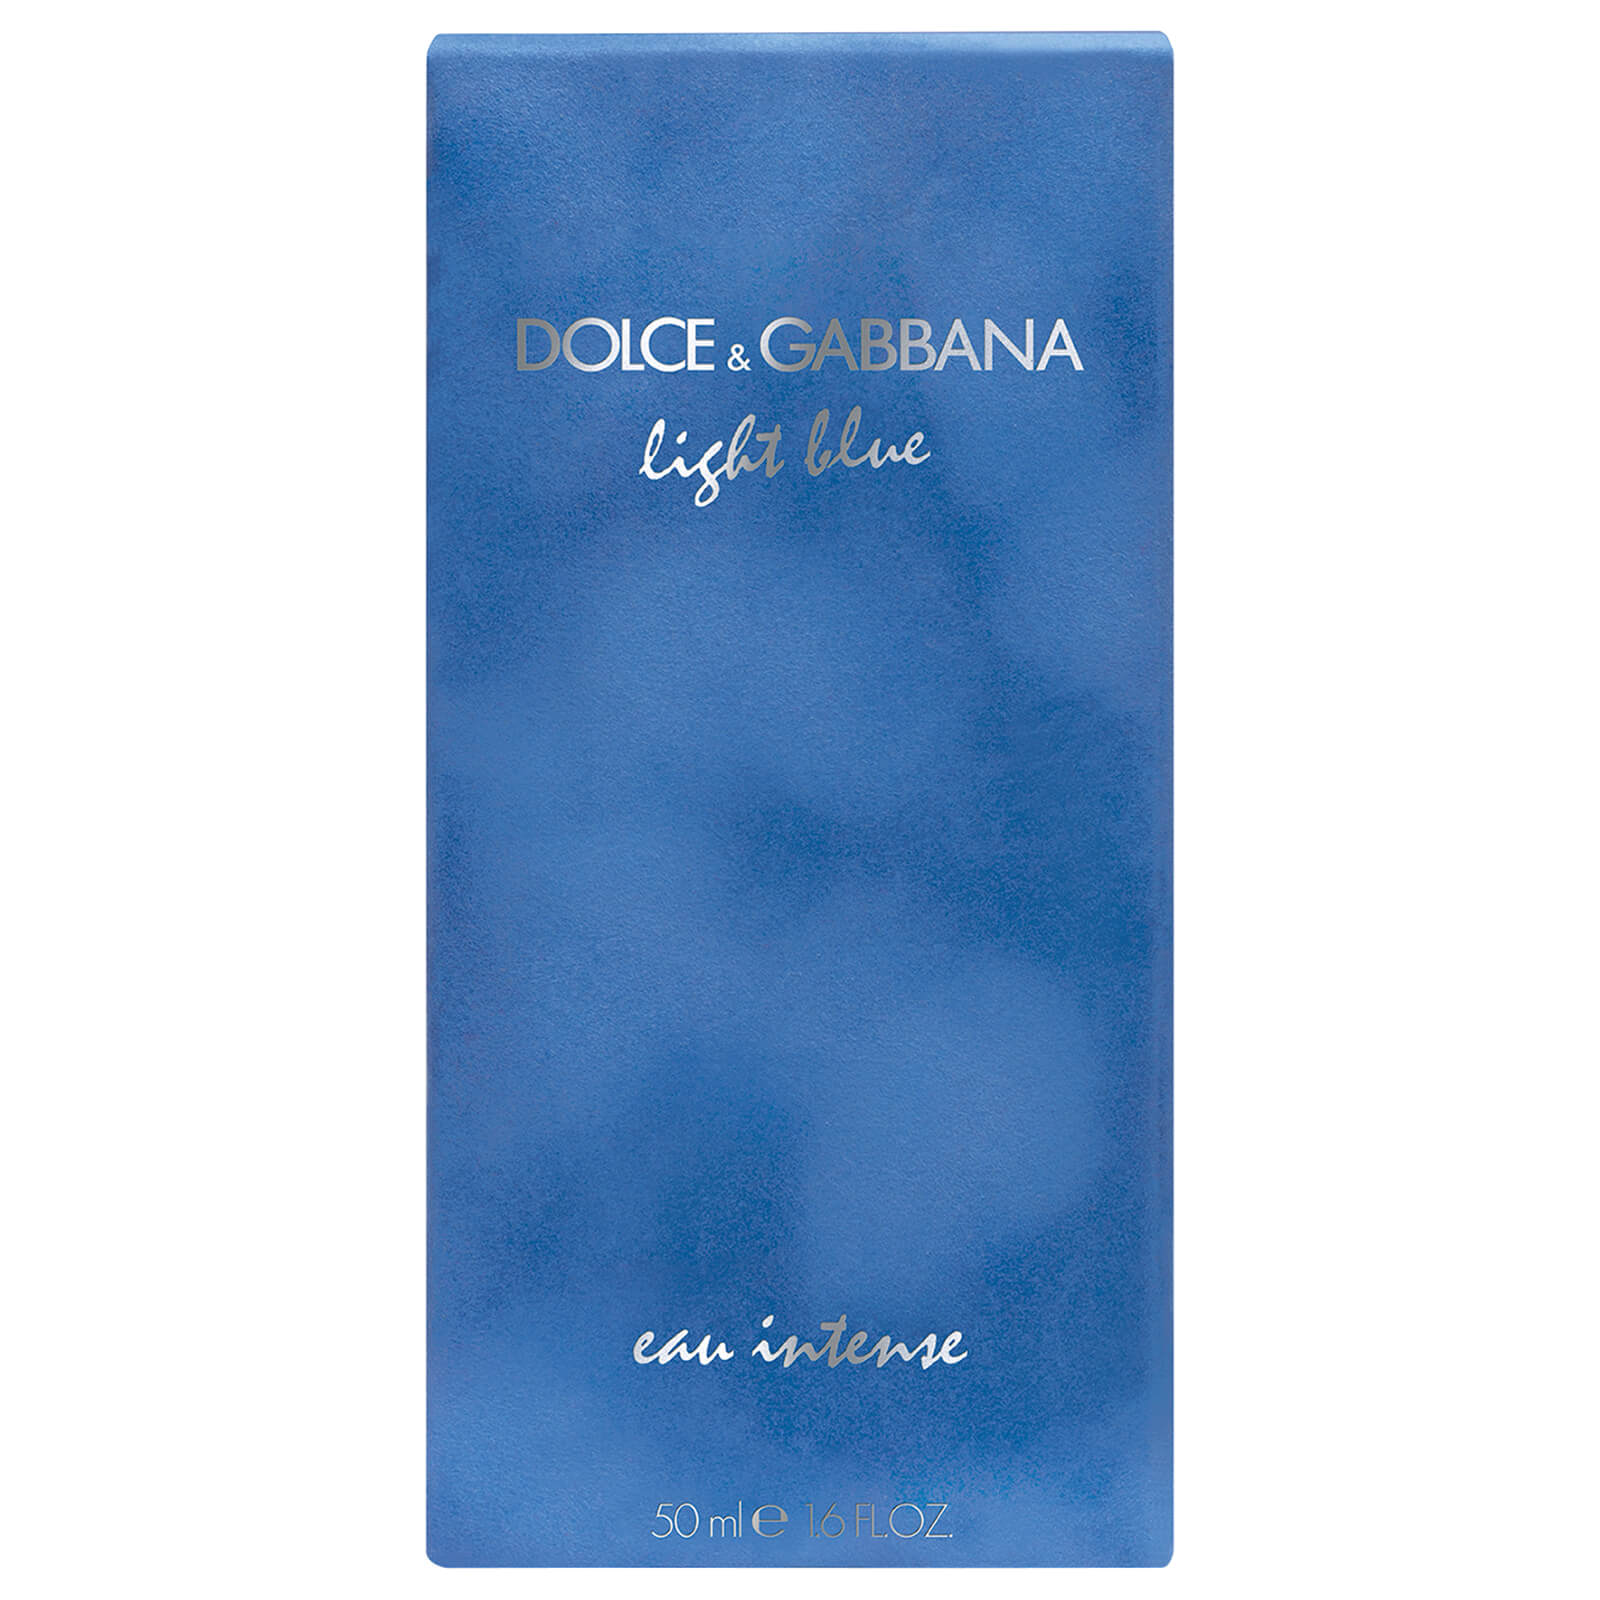 Light blue homme intense. Dolce & Gabbana Light Blue Eau intense. Dolce & Gabbana Light Blue Eau intense 100 мл. Dolce Gabbana Light Blue Eau intense женские. Дольче Габбана Лайт Блю женские 50 мл.